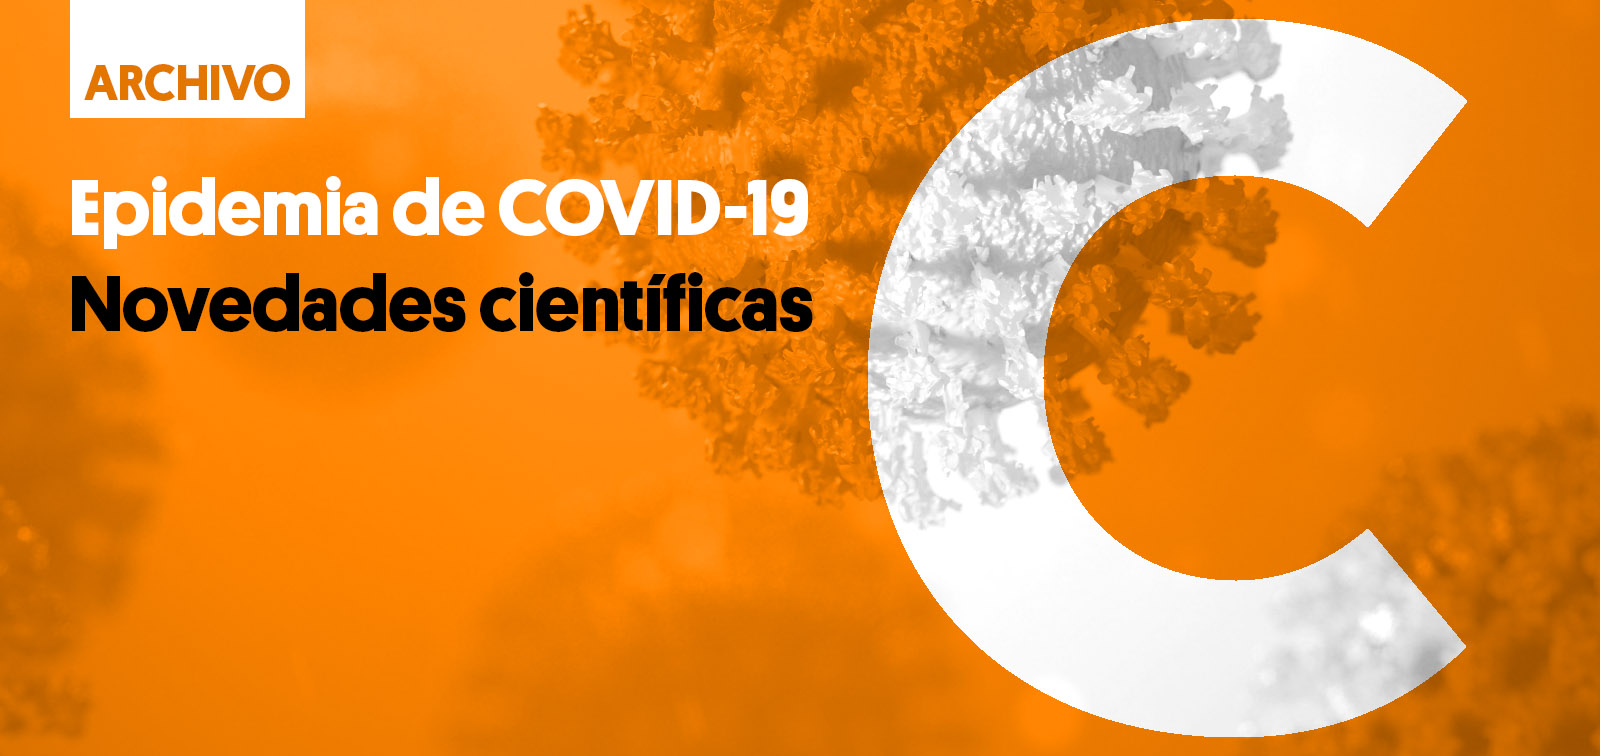 COVID-19 Scientific Updates Archive - ES